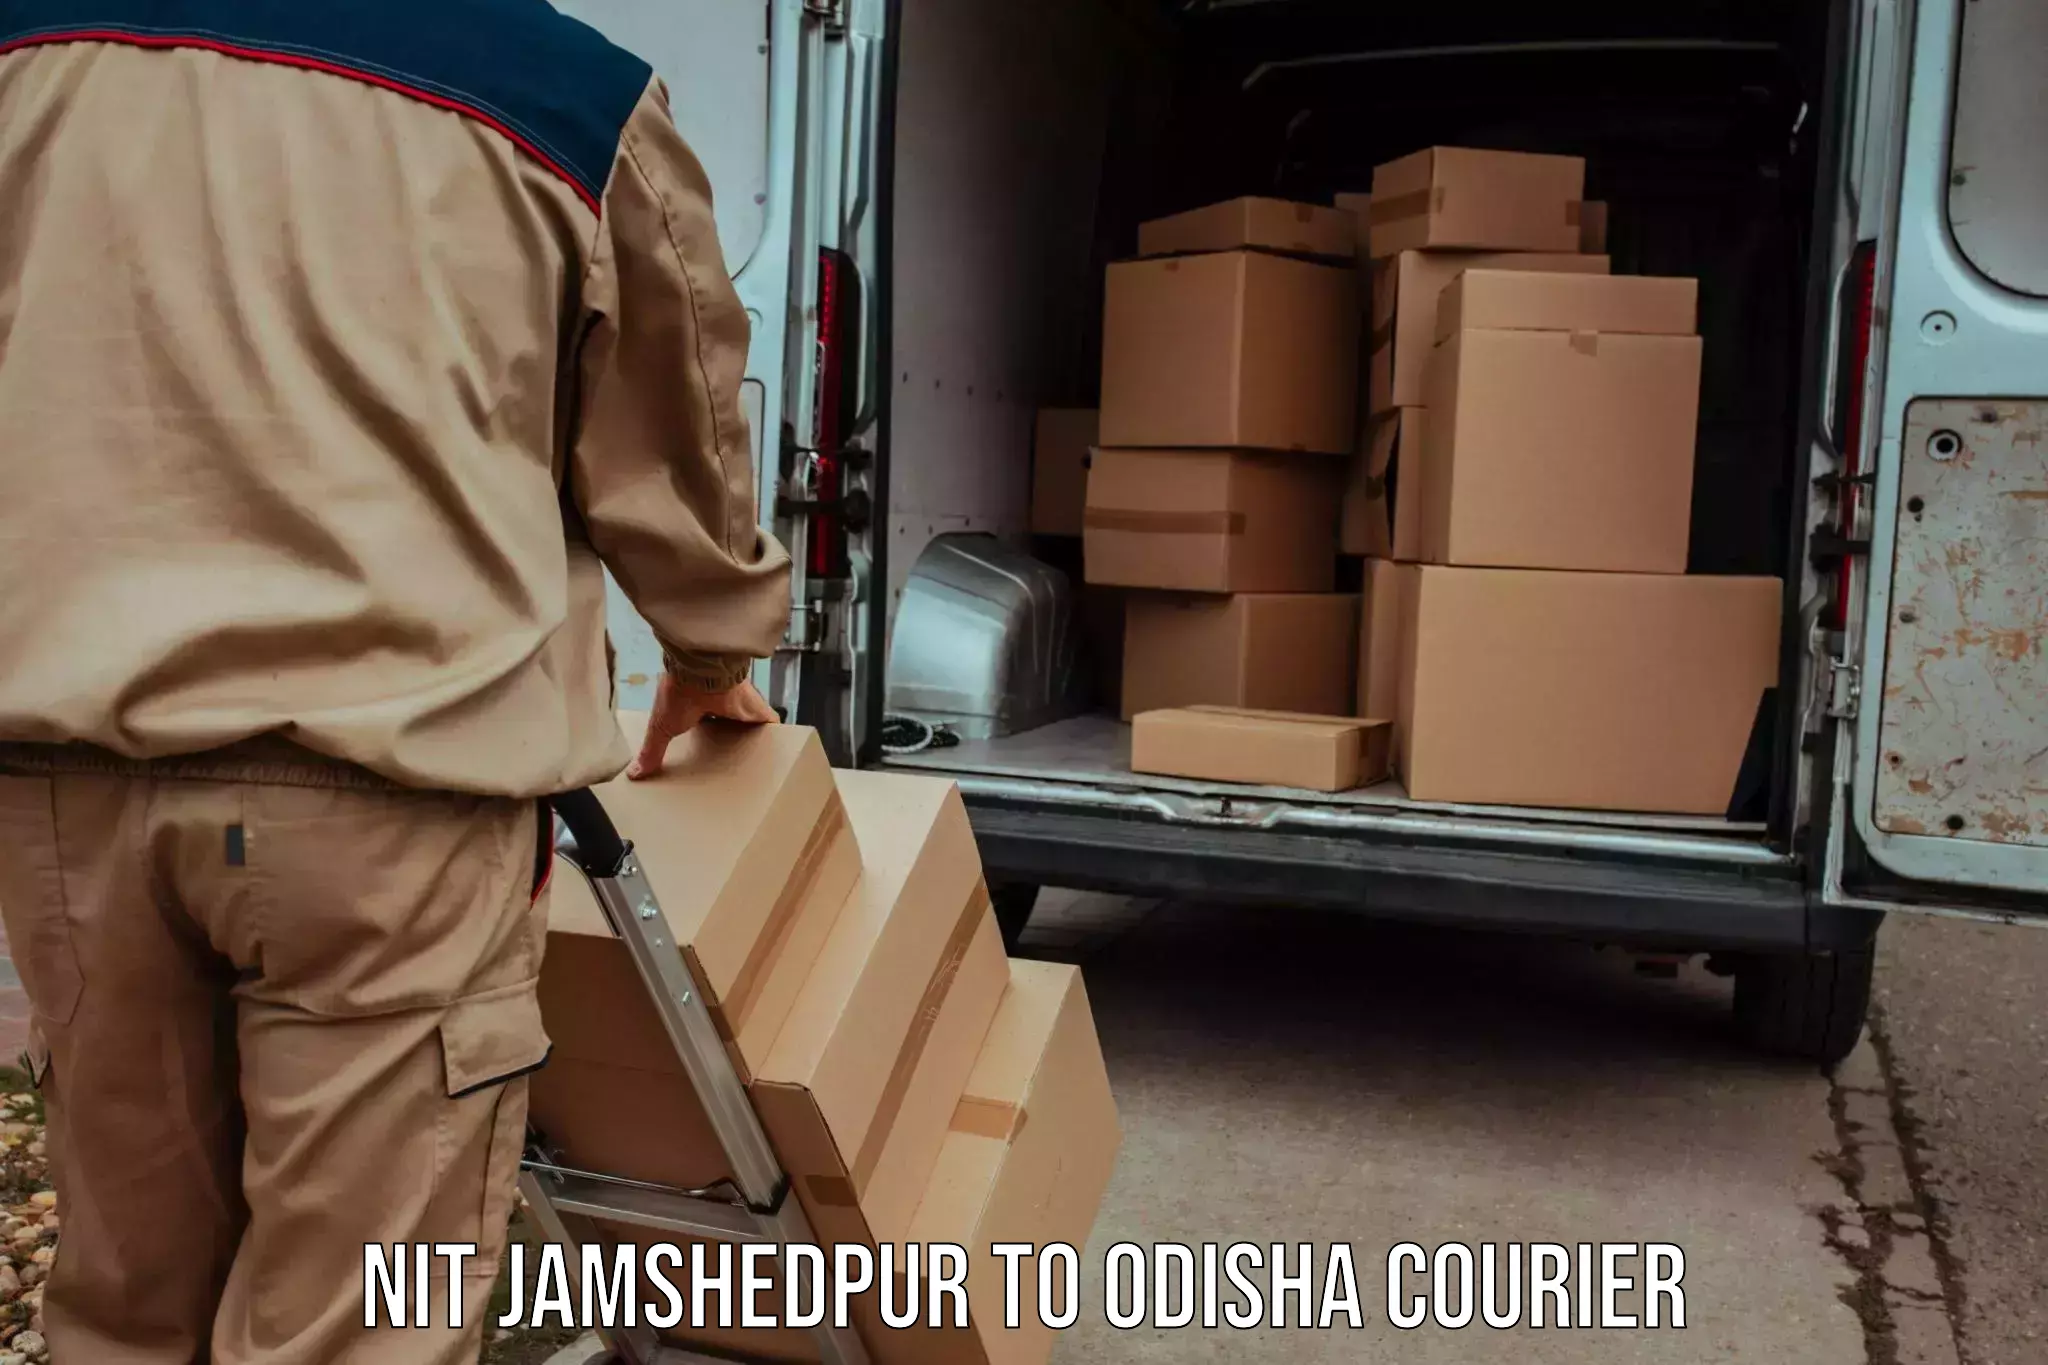 Global shipping networks NIT Jamshedpur to Jagannathprasad